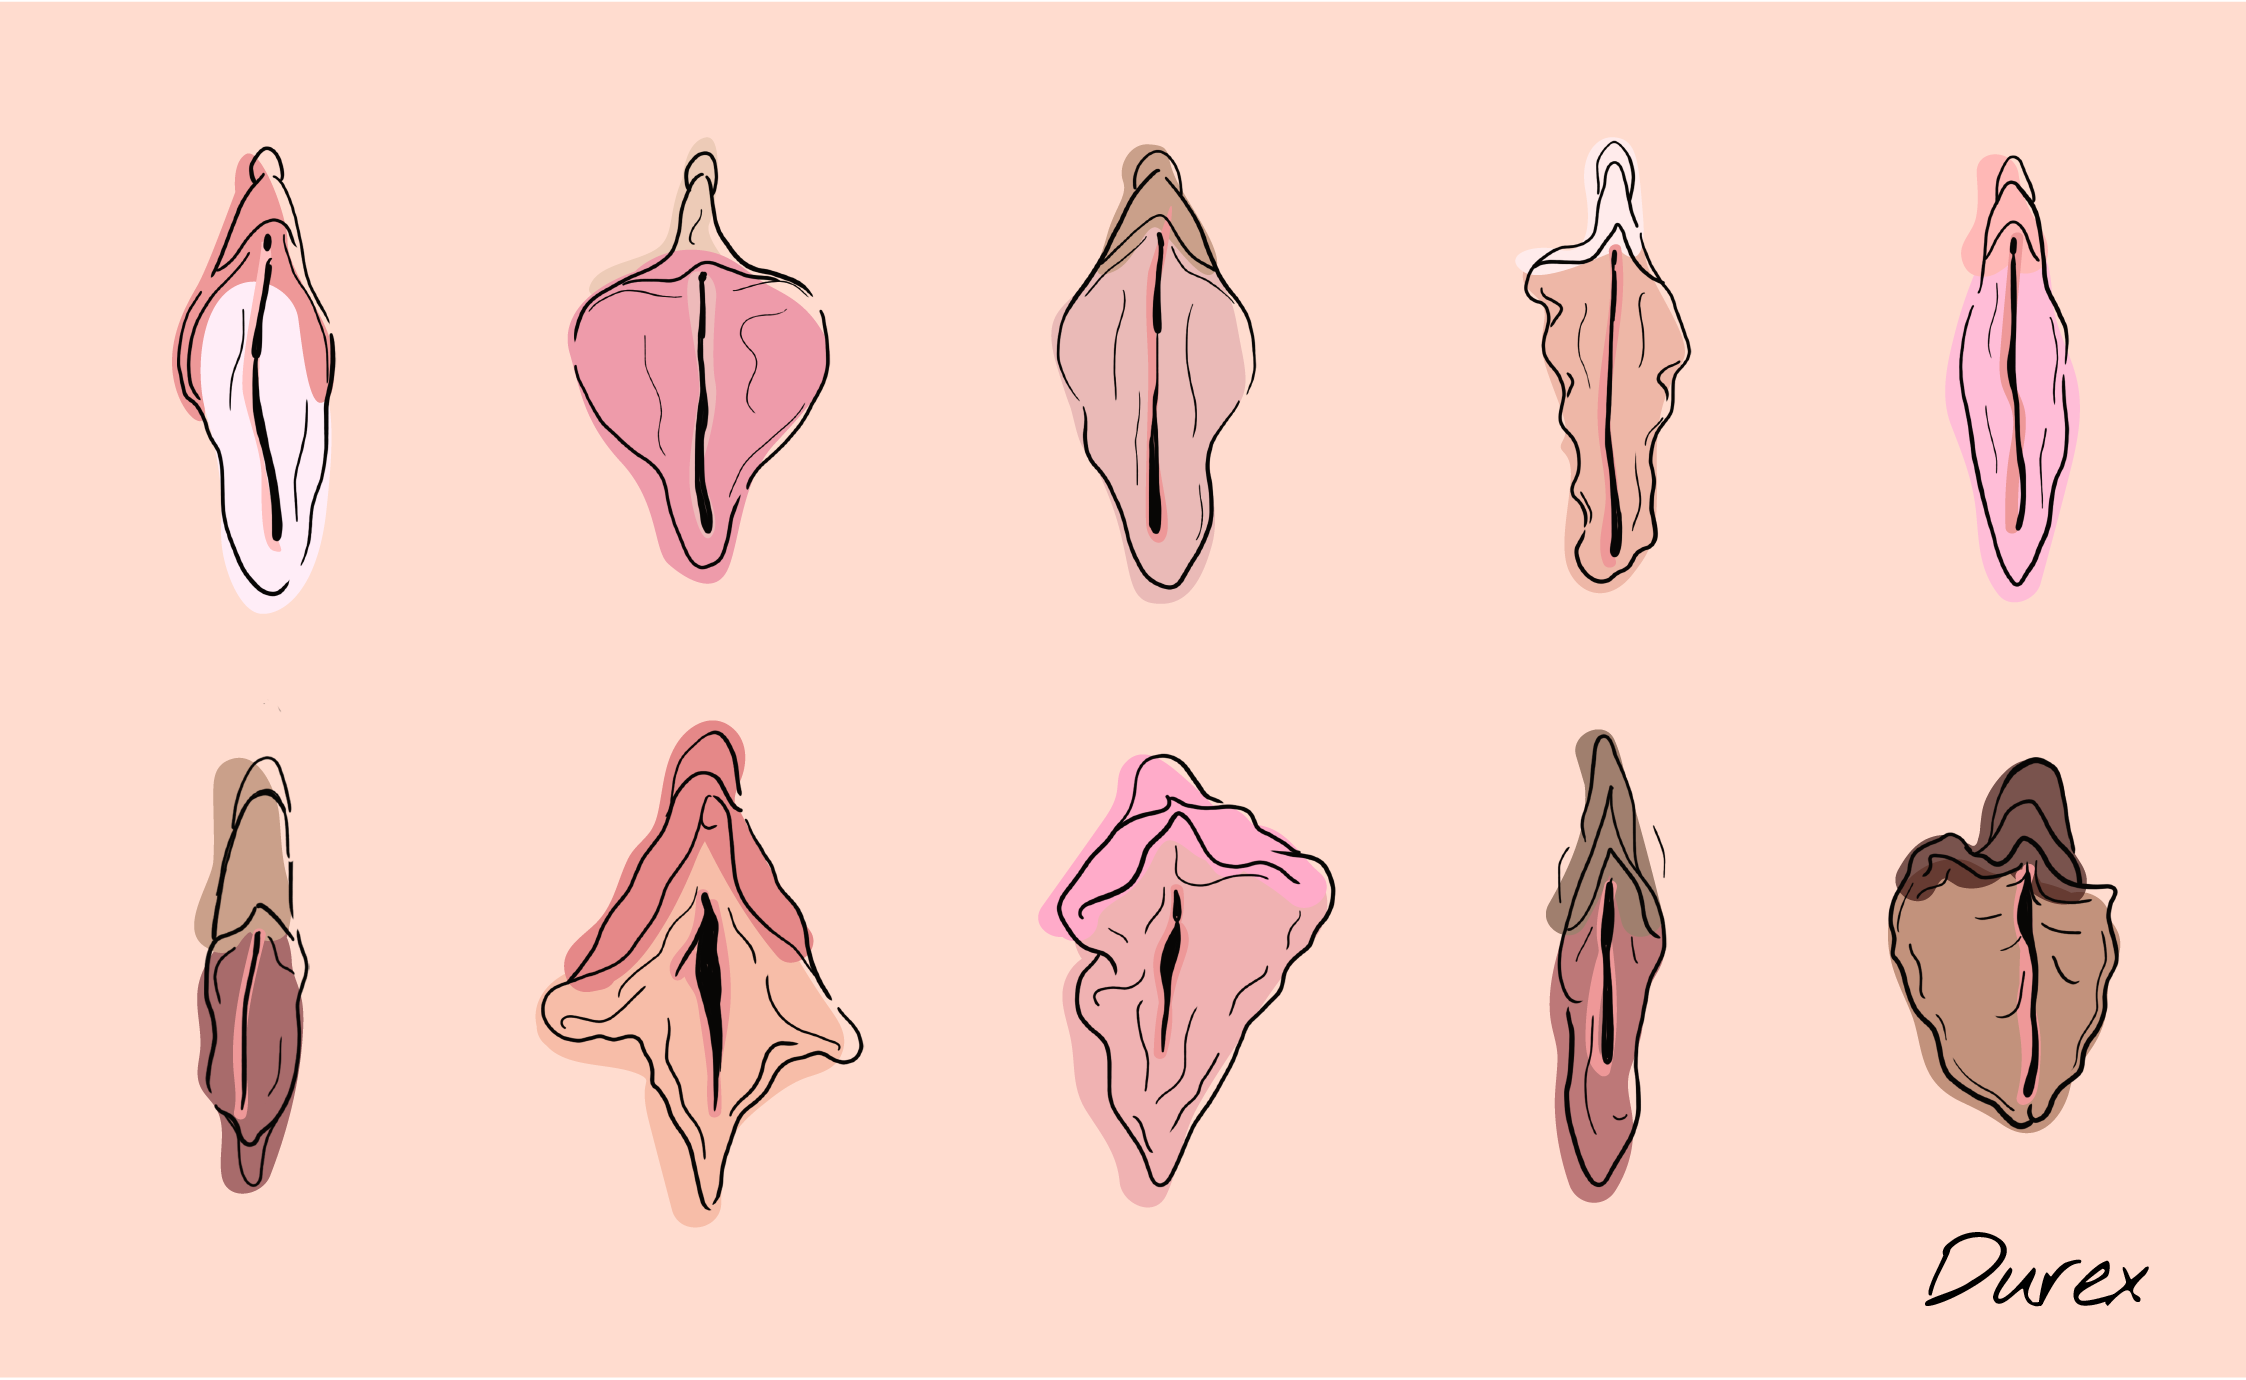 Como cambiar el sabor de la vulva